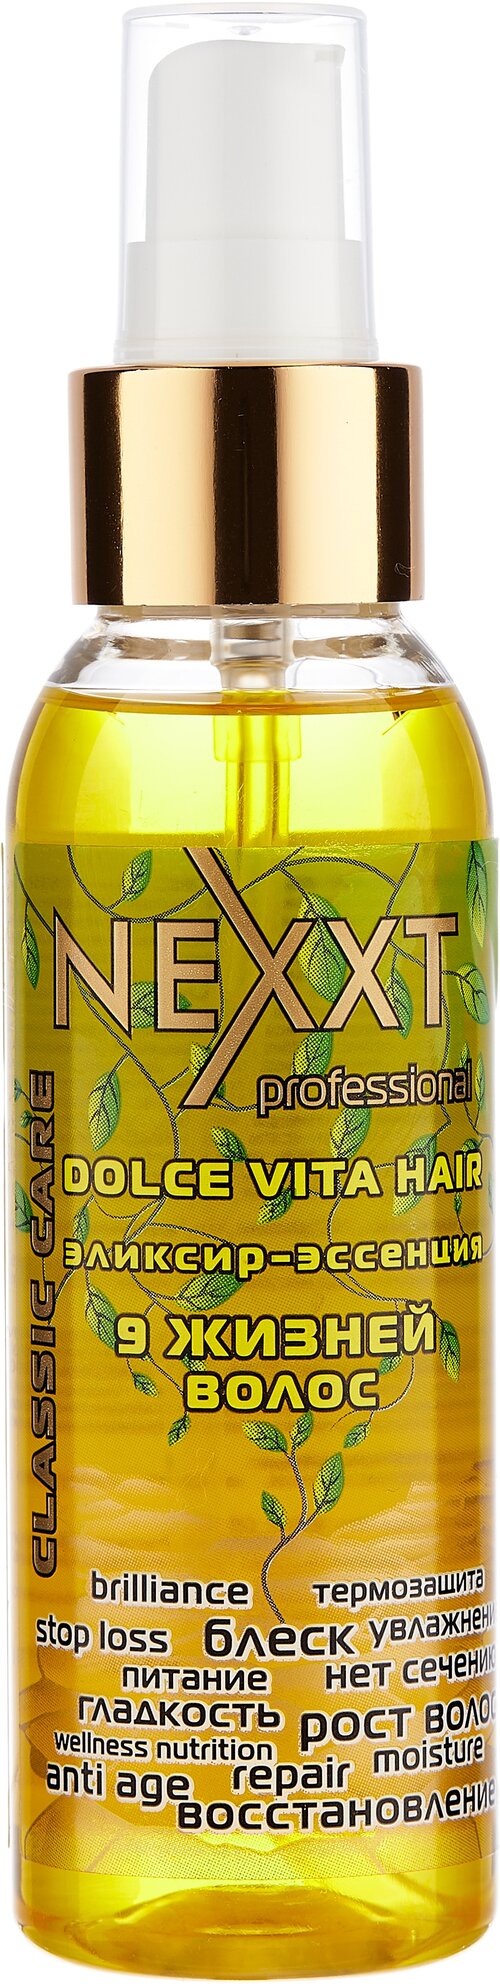 NEXPROF Salon Treatment Care Эликсир-эссенция 9 жизней волос, 100 мл, аэрозоль